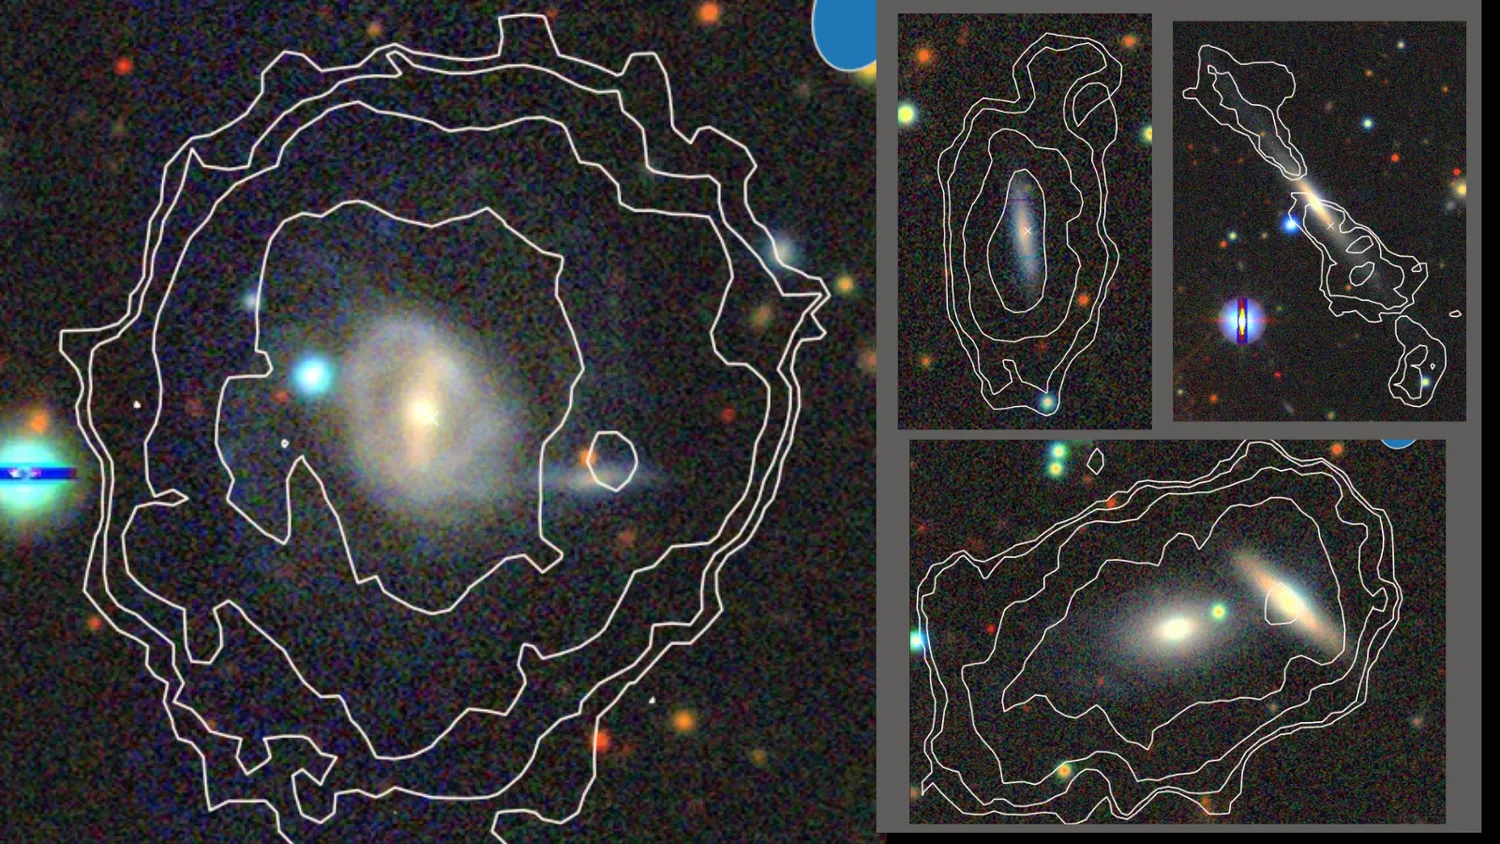 Mehr über den Artikel erfahren Kosmischer Goldrausch! Astronomen finden 49 neue Galaxien in nur 3 Stunden